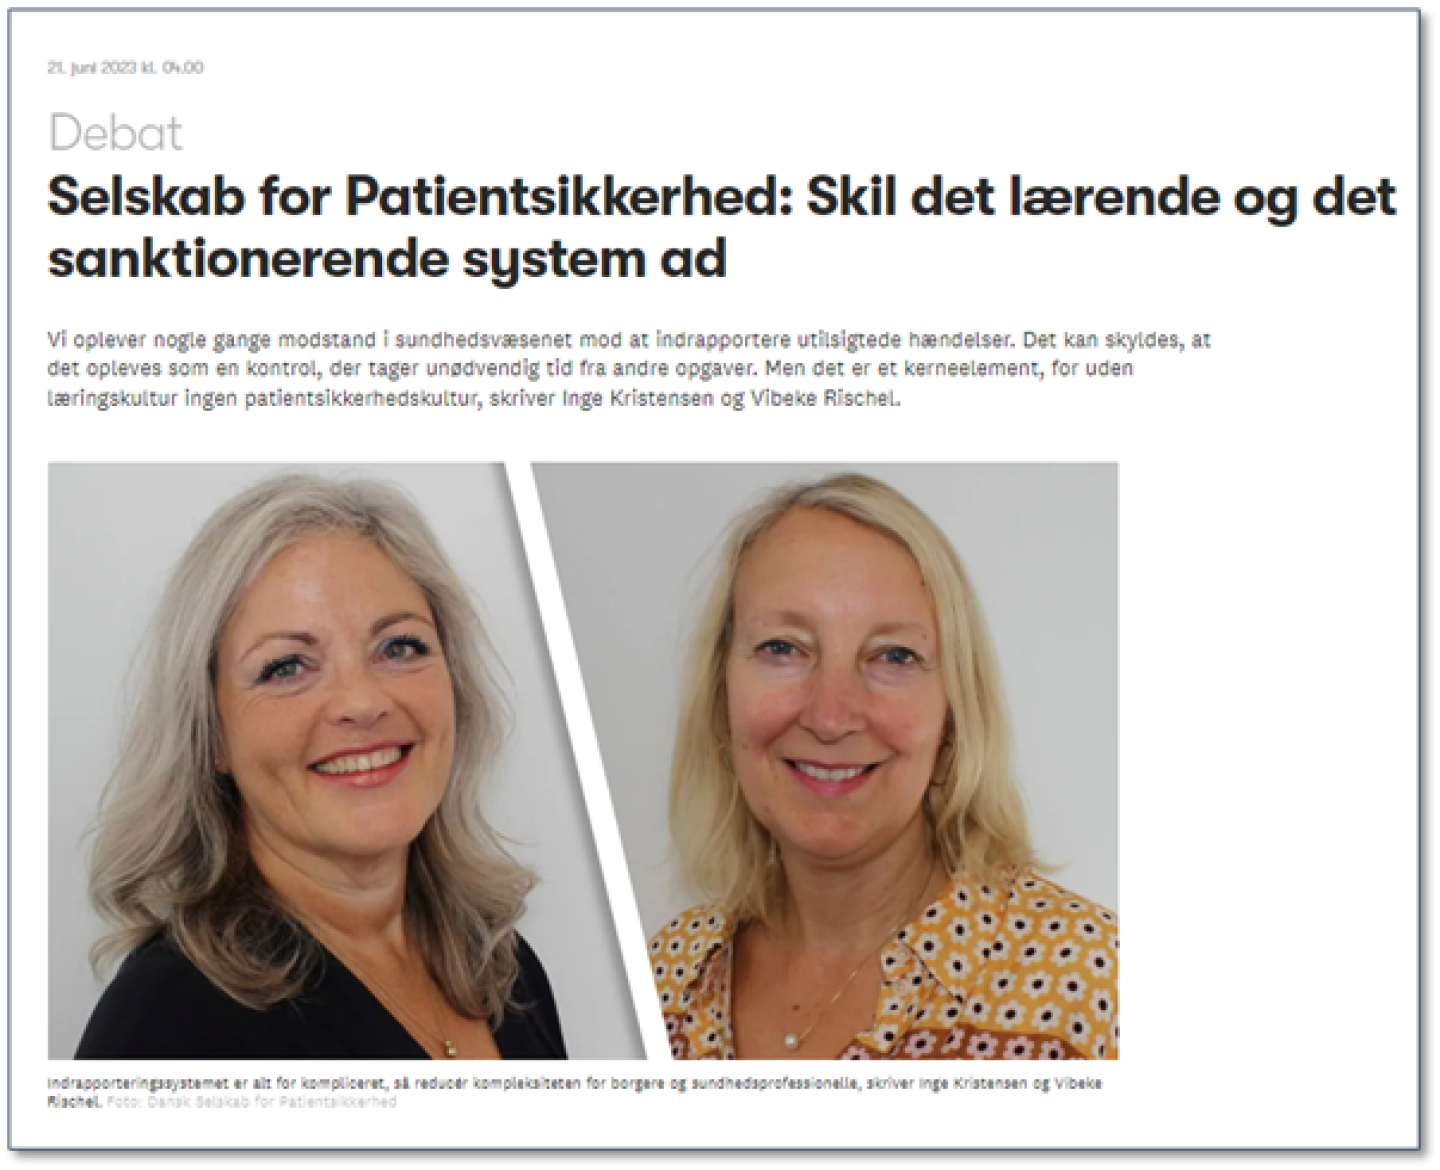 Skjermdump: Viser innlegget fra direktør Inge Kristensen og visedirektør Vibeke Rischel i Dansk Selskab for Patientsikkerhed, med portrettbilder av begge. 